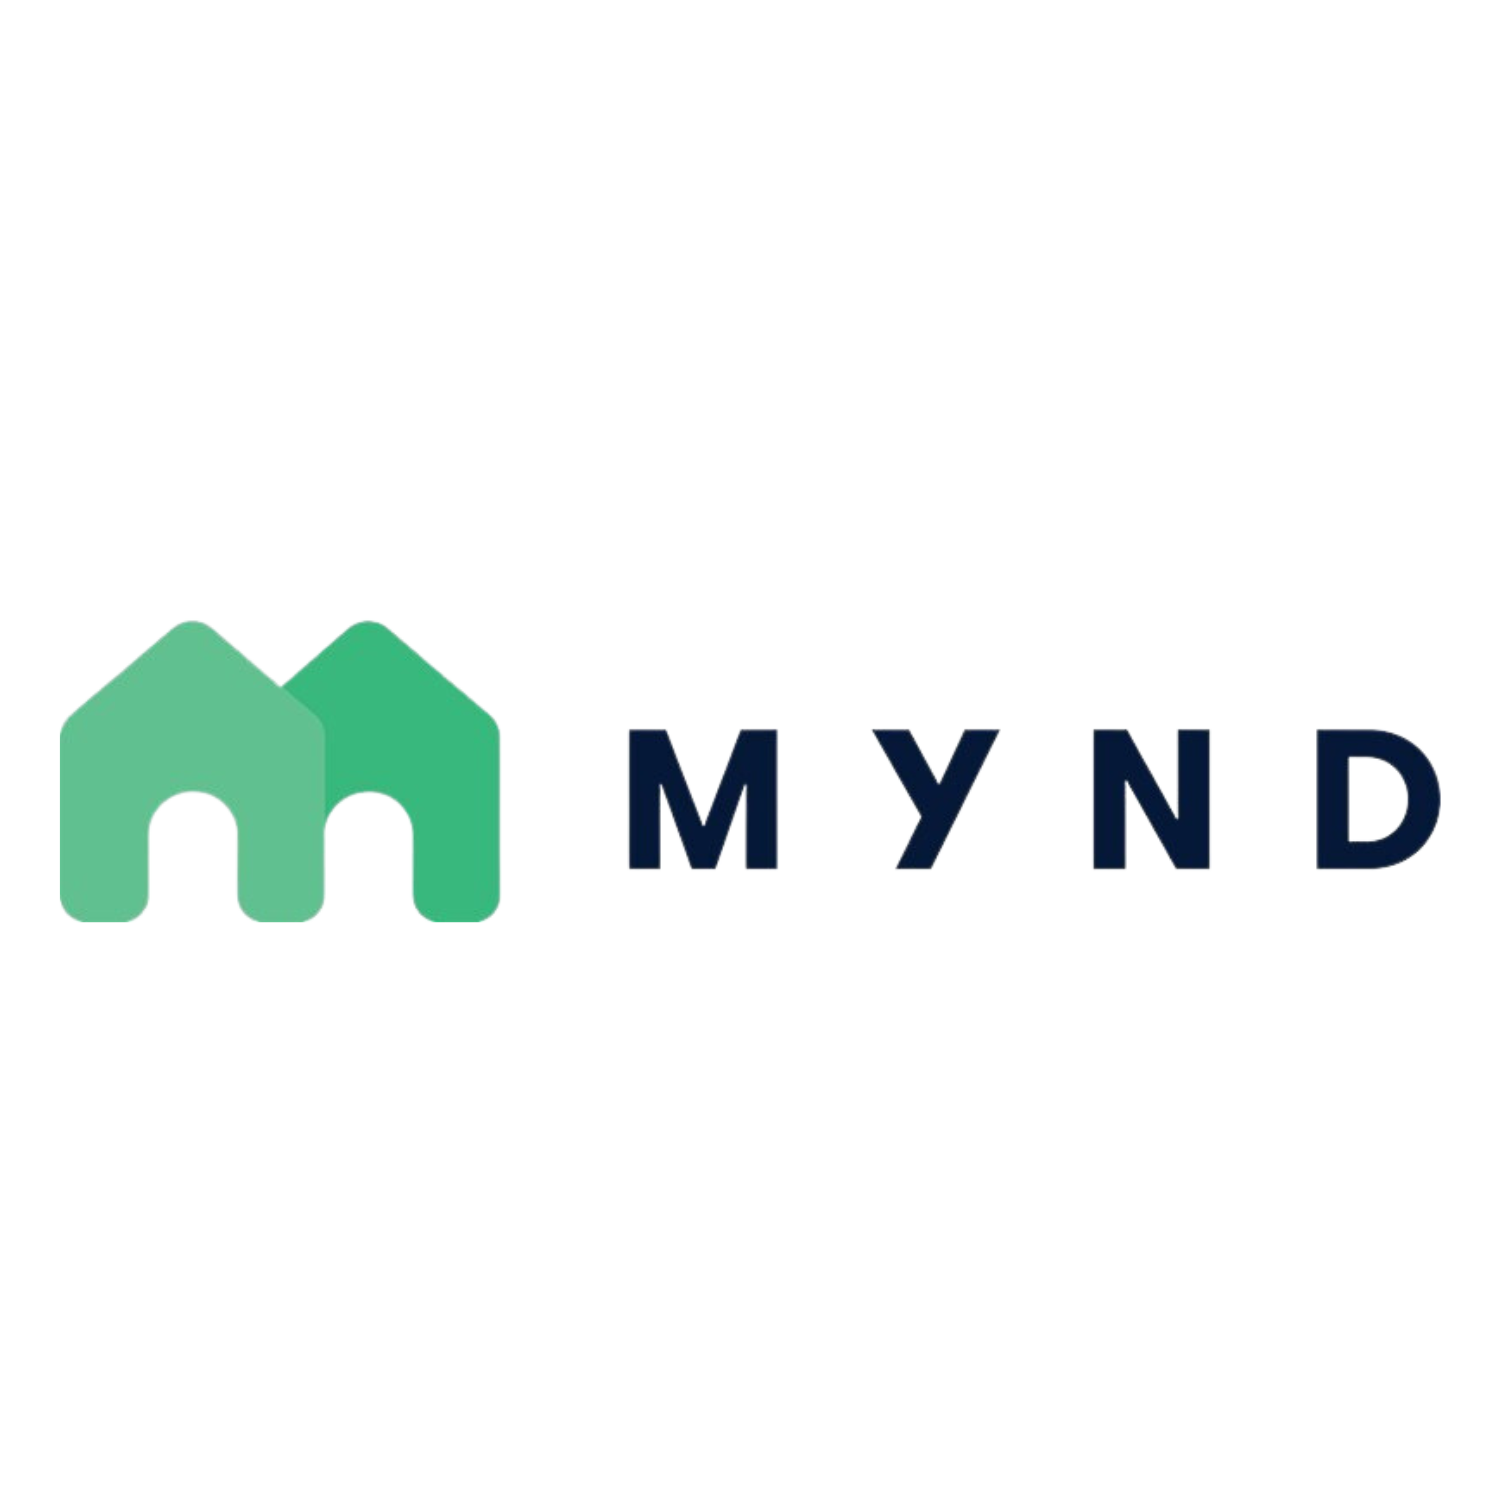 Mynd Inc